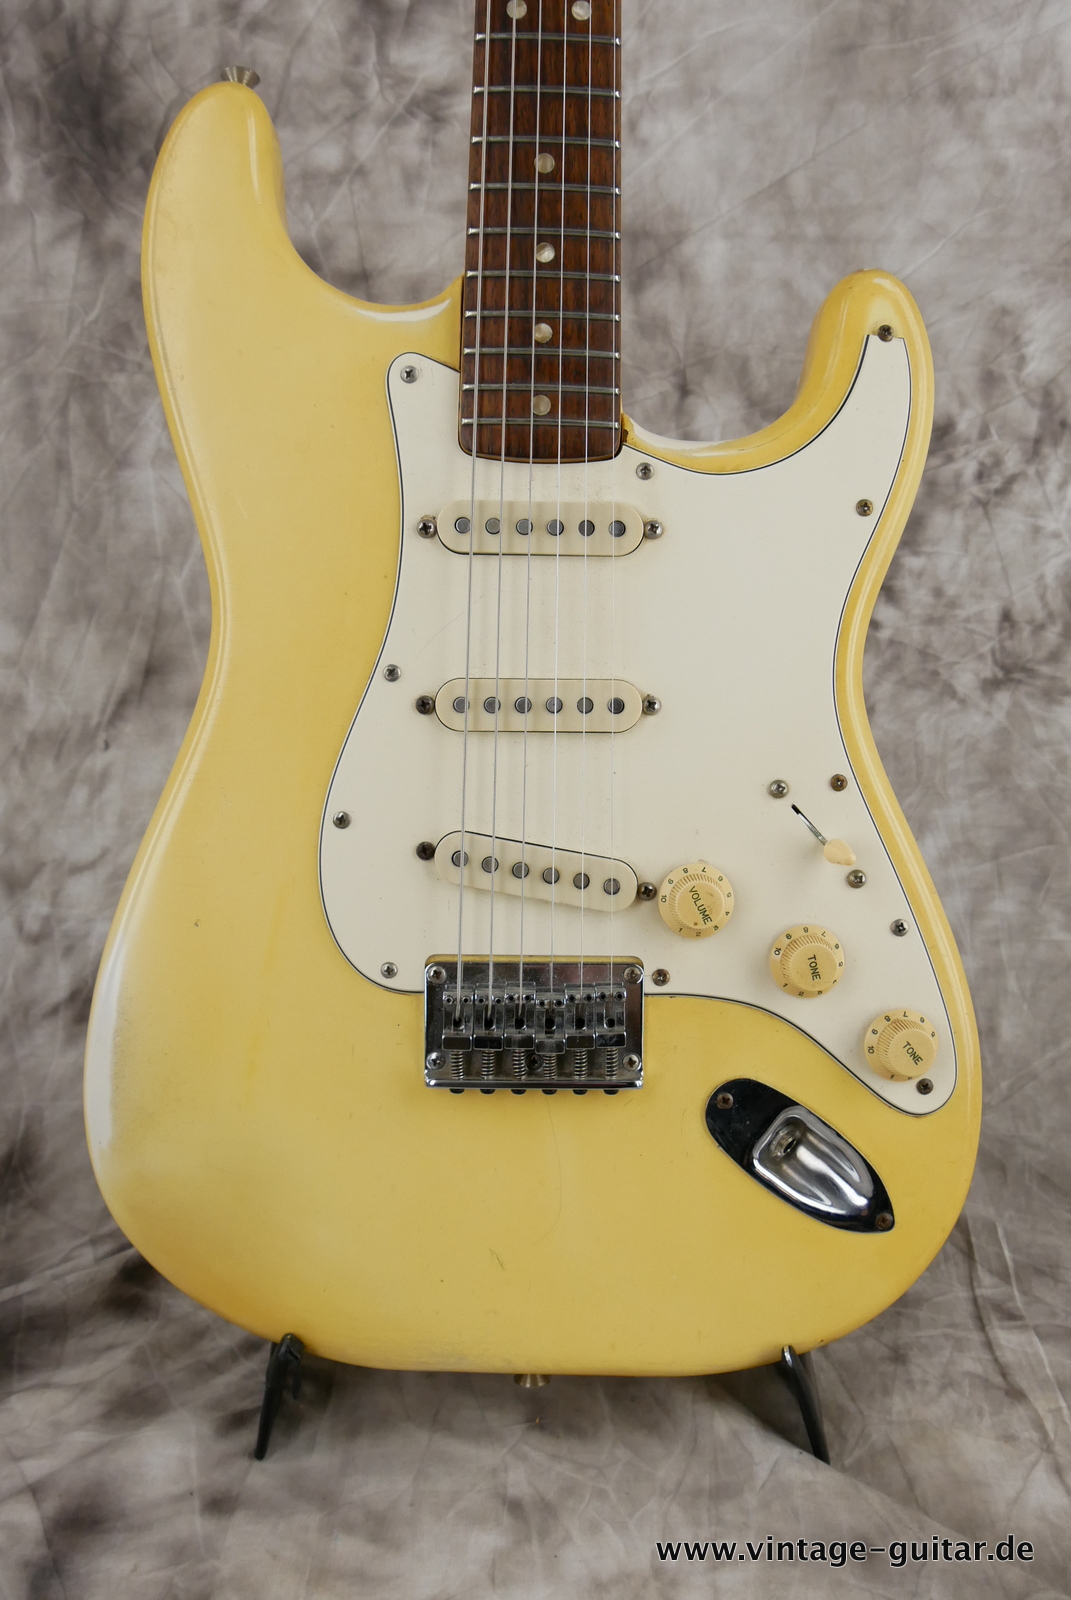 Fender-Stratocaster-hardtail-1972-olympic-white-002.JPG